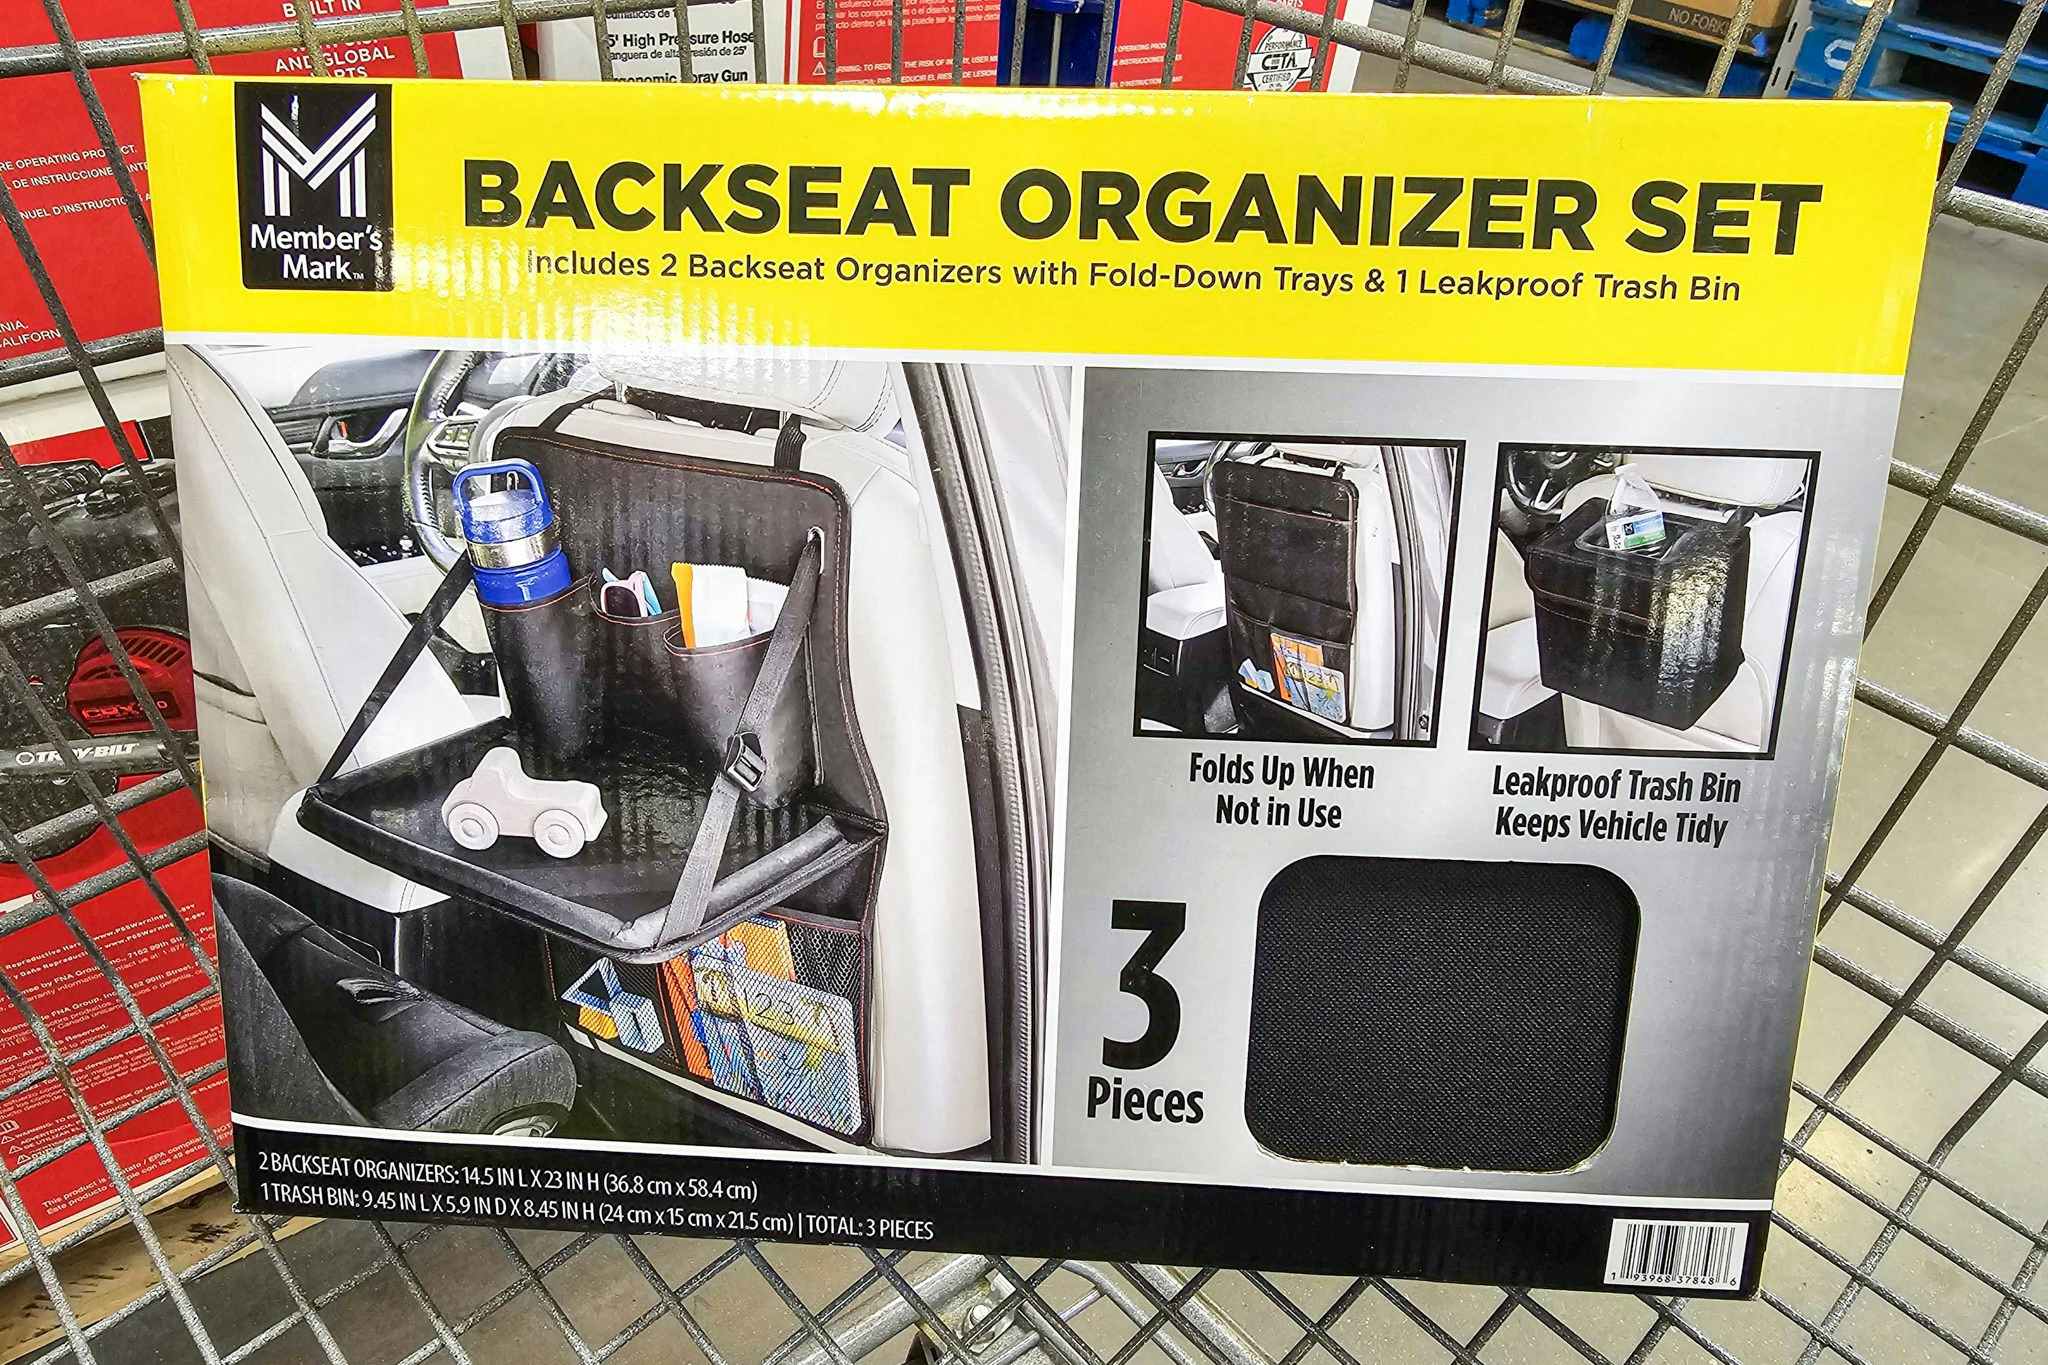 backseat organizer set in a cart